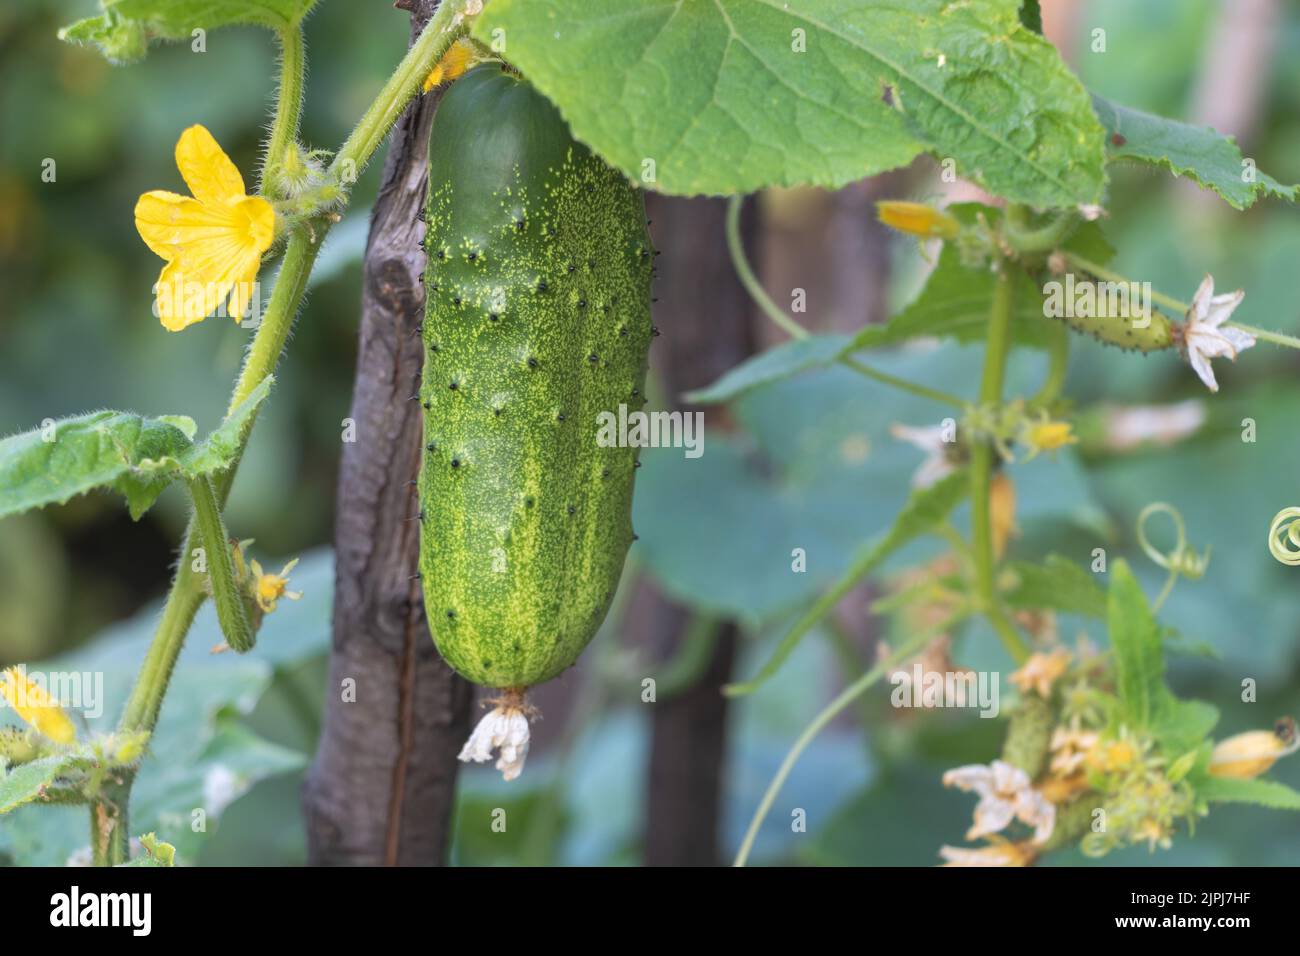 Cetriolo fresco su un supporto in legno - angolo alto di cetriolo verde che cresce in giardino nelle giornate di sole Foto Stock